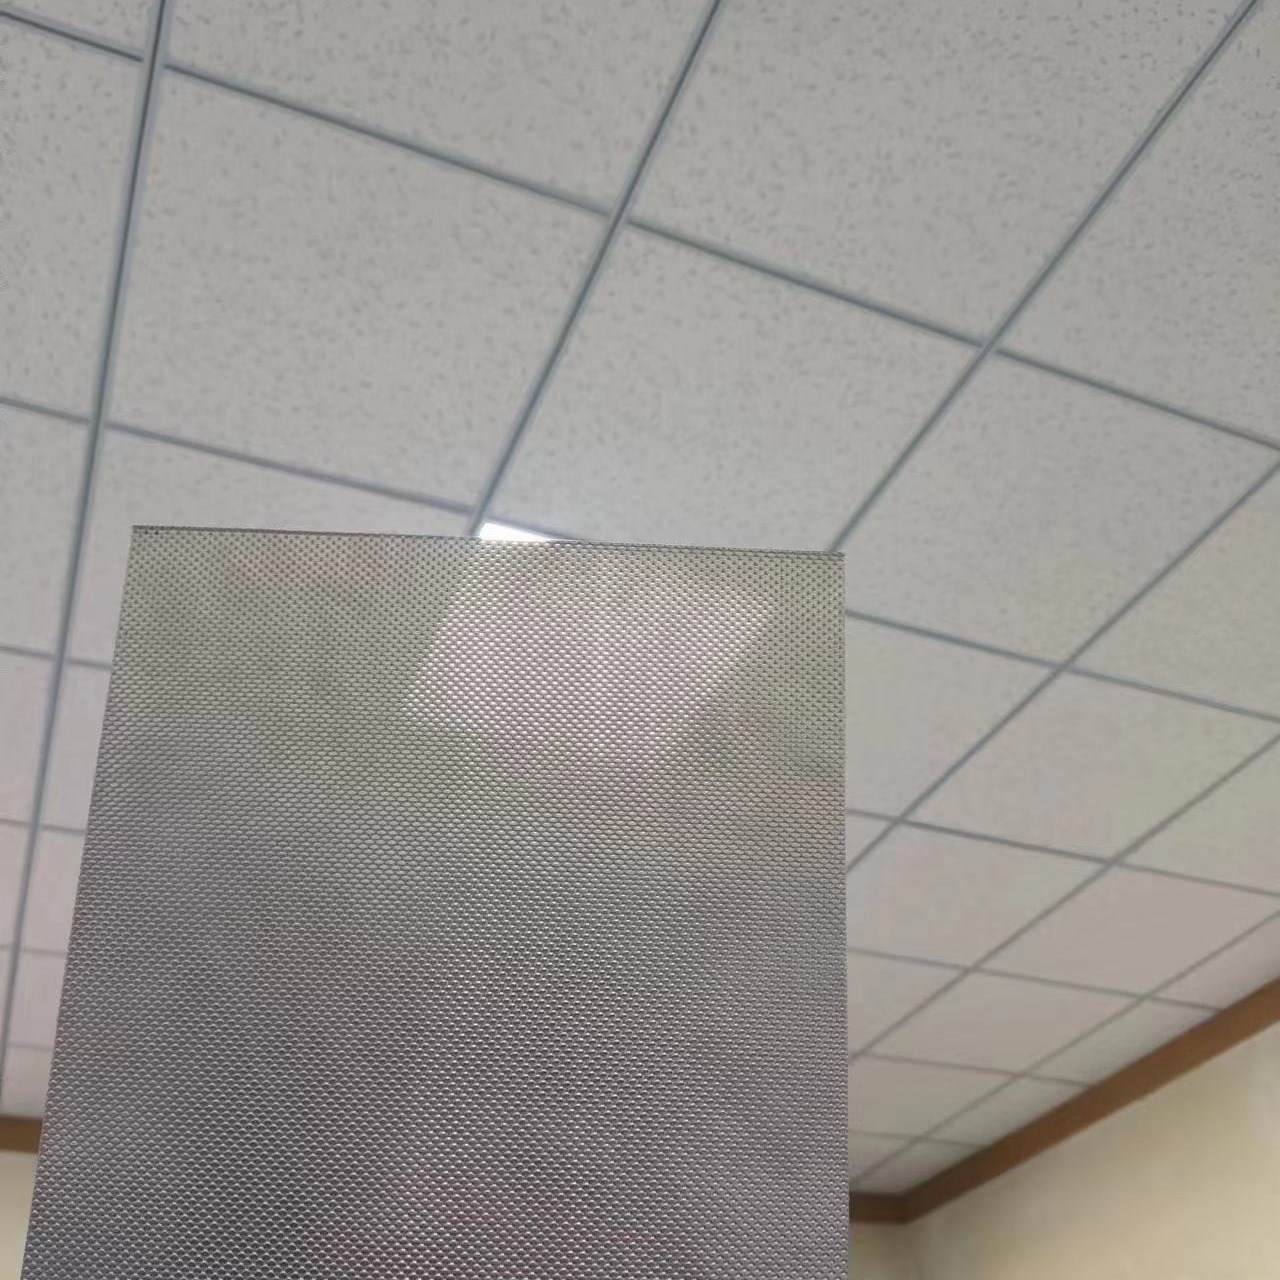 超微孔铝板 密孔铝单板 冲孔铝板孔规格尺寸可定制图片